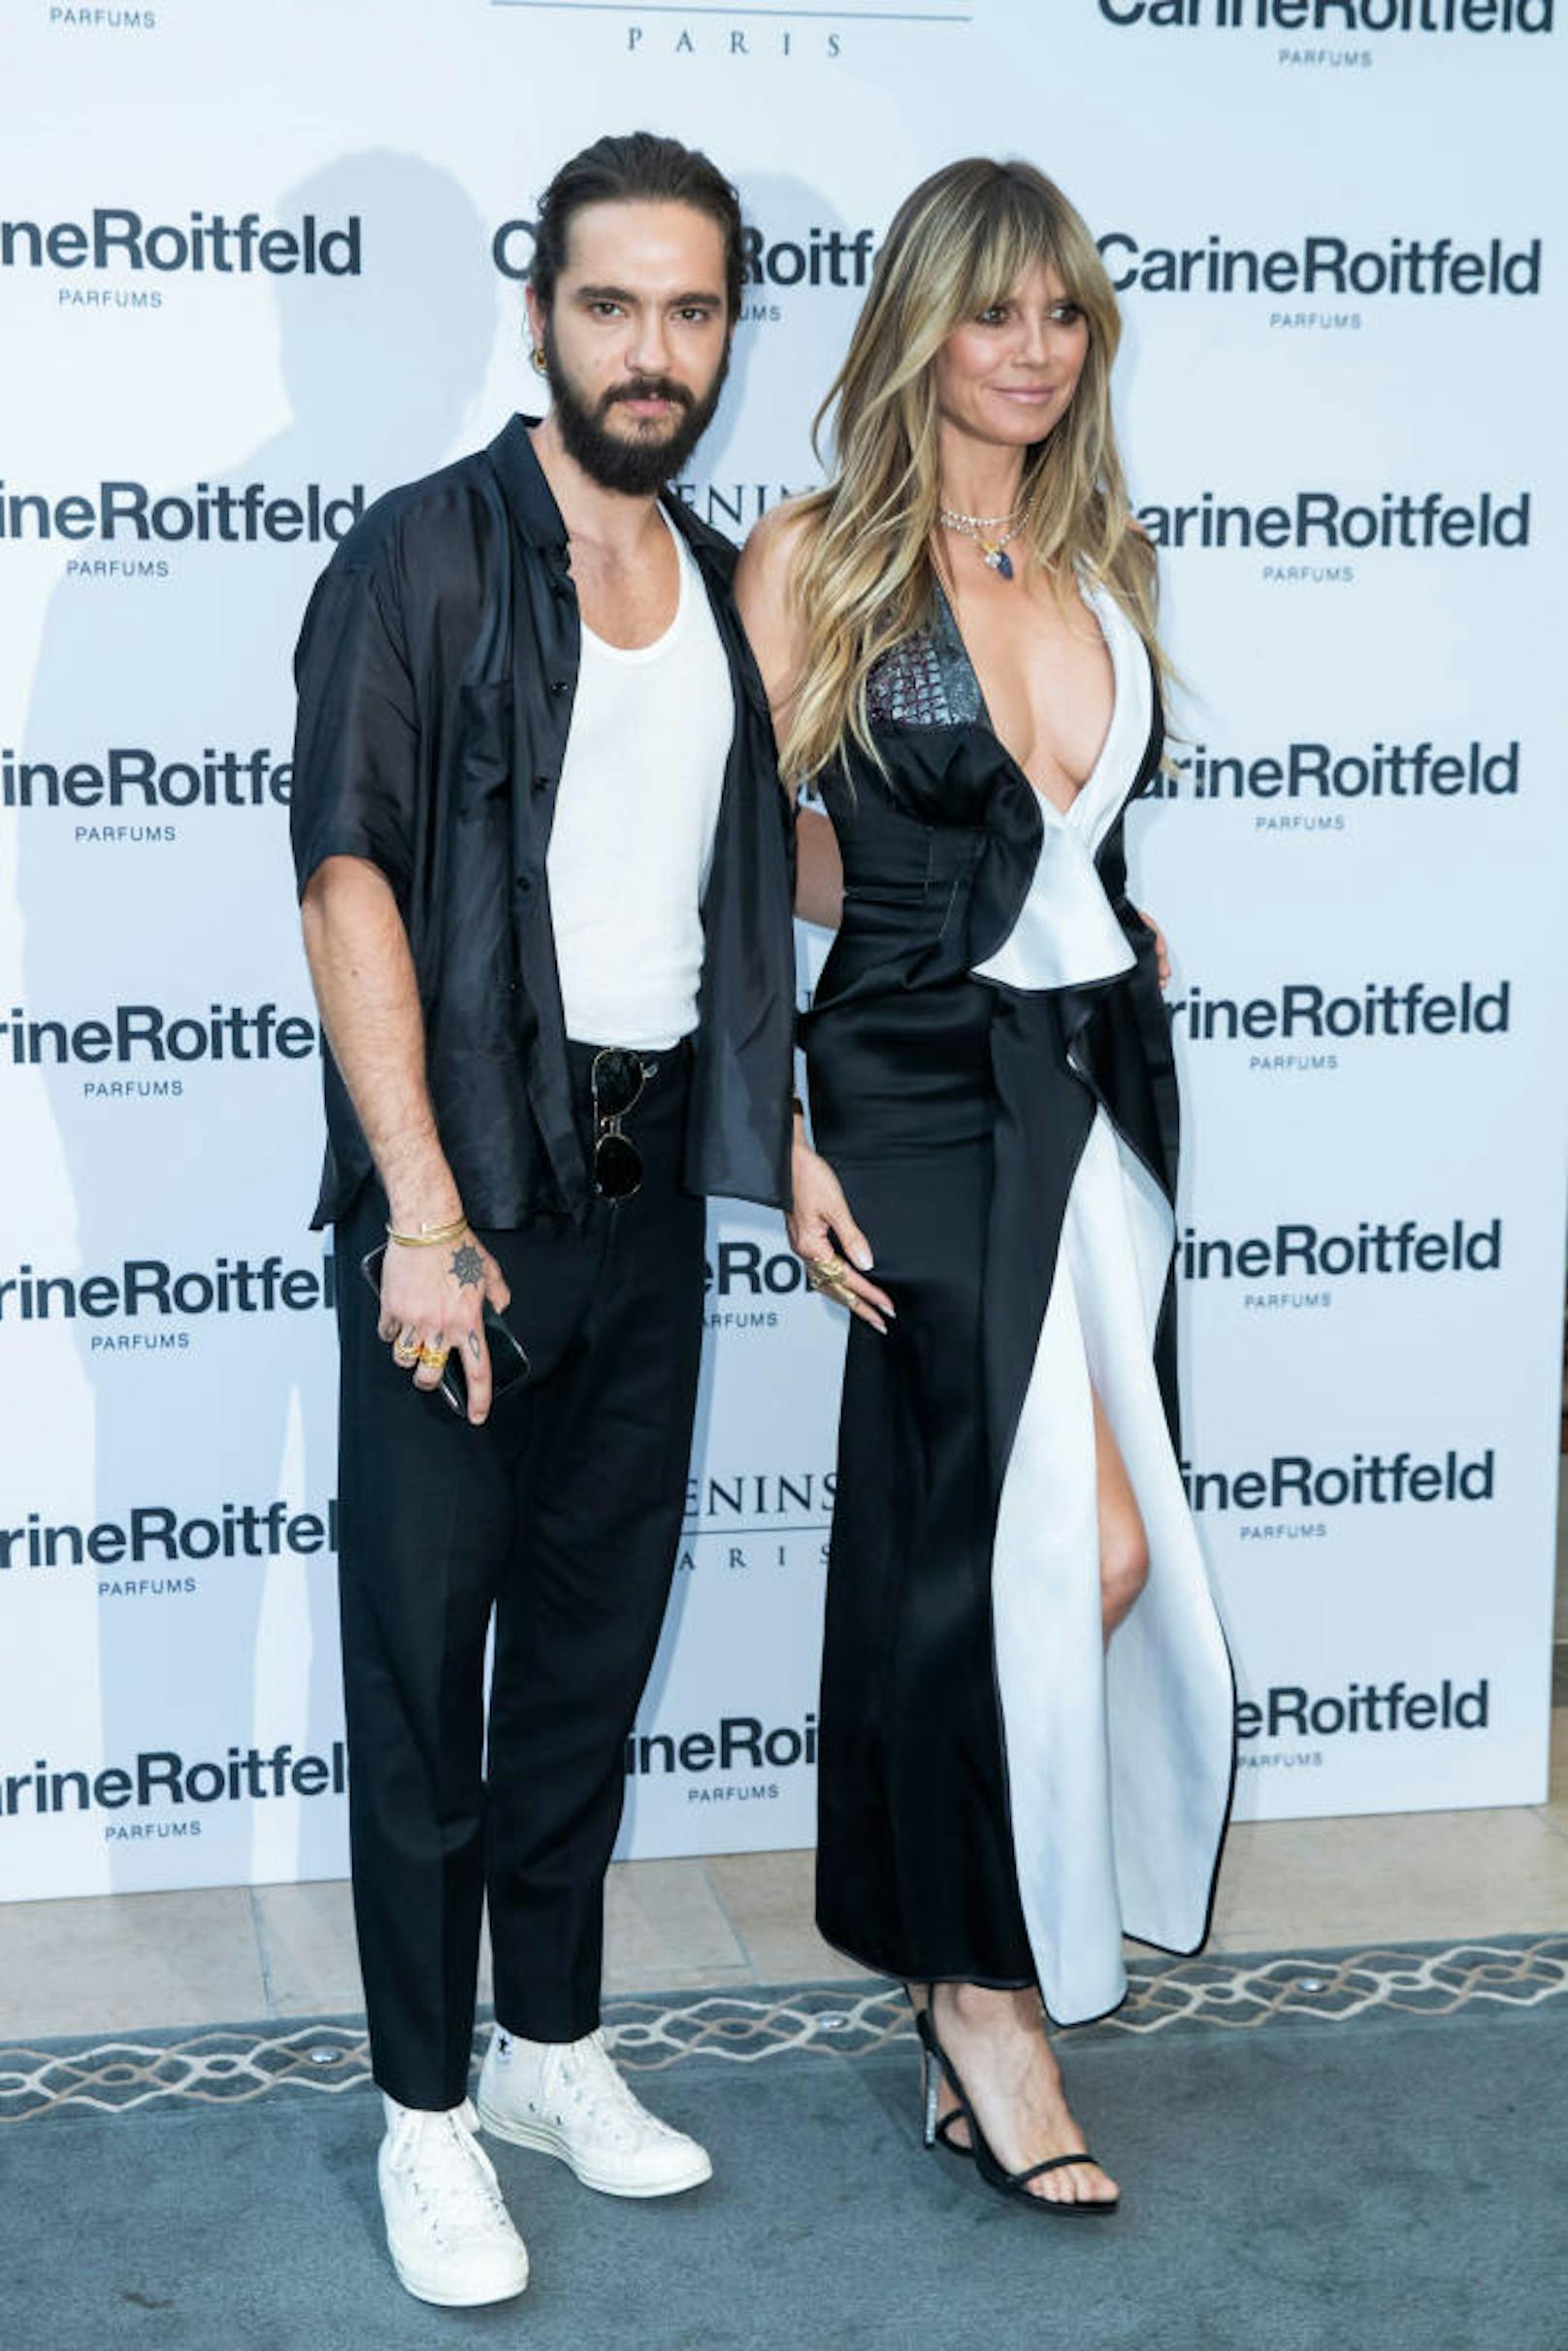 02.07.2019: Heidi Klum und Tom Kaulitz bei einem Fashion Event von Carine Roitfeld in Paris. Hans und Franz durften sich wieder einmal der Öffentlichkeit präsentieren.